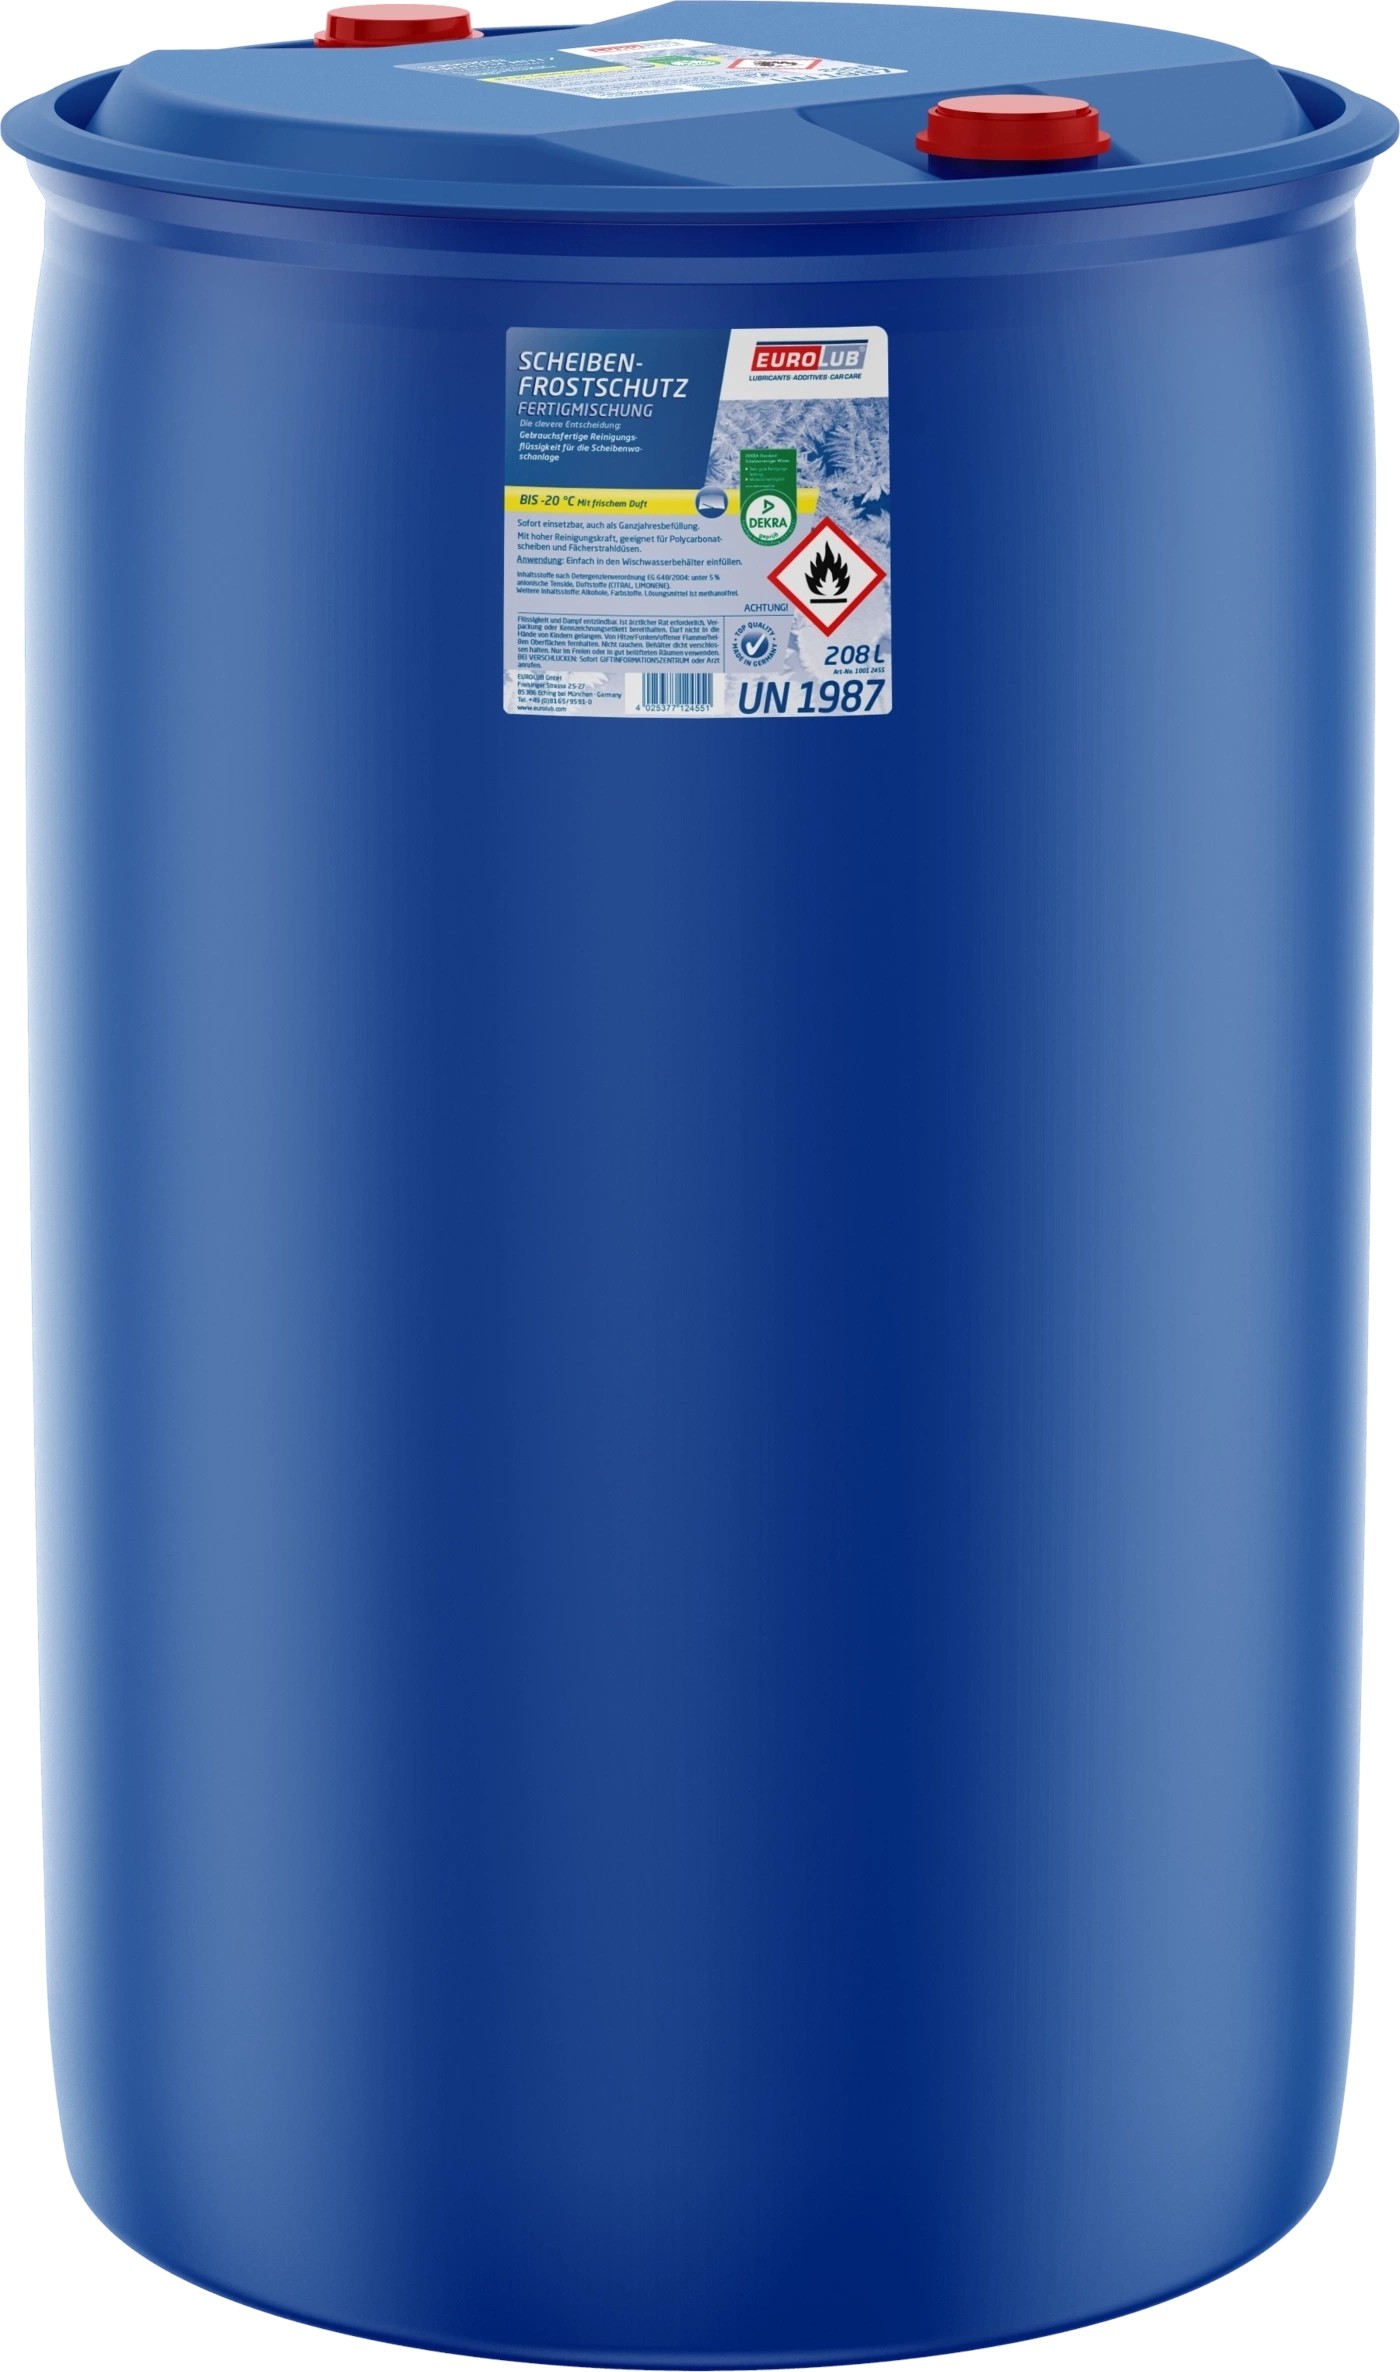 Scheibenfrostschutz 25 Liter - BEST4FORST